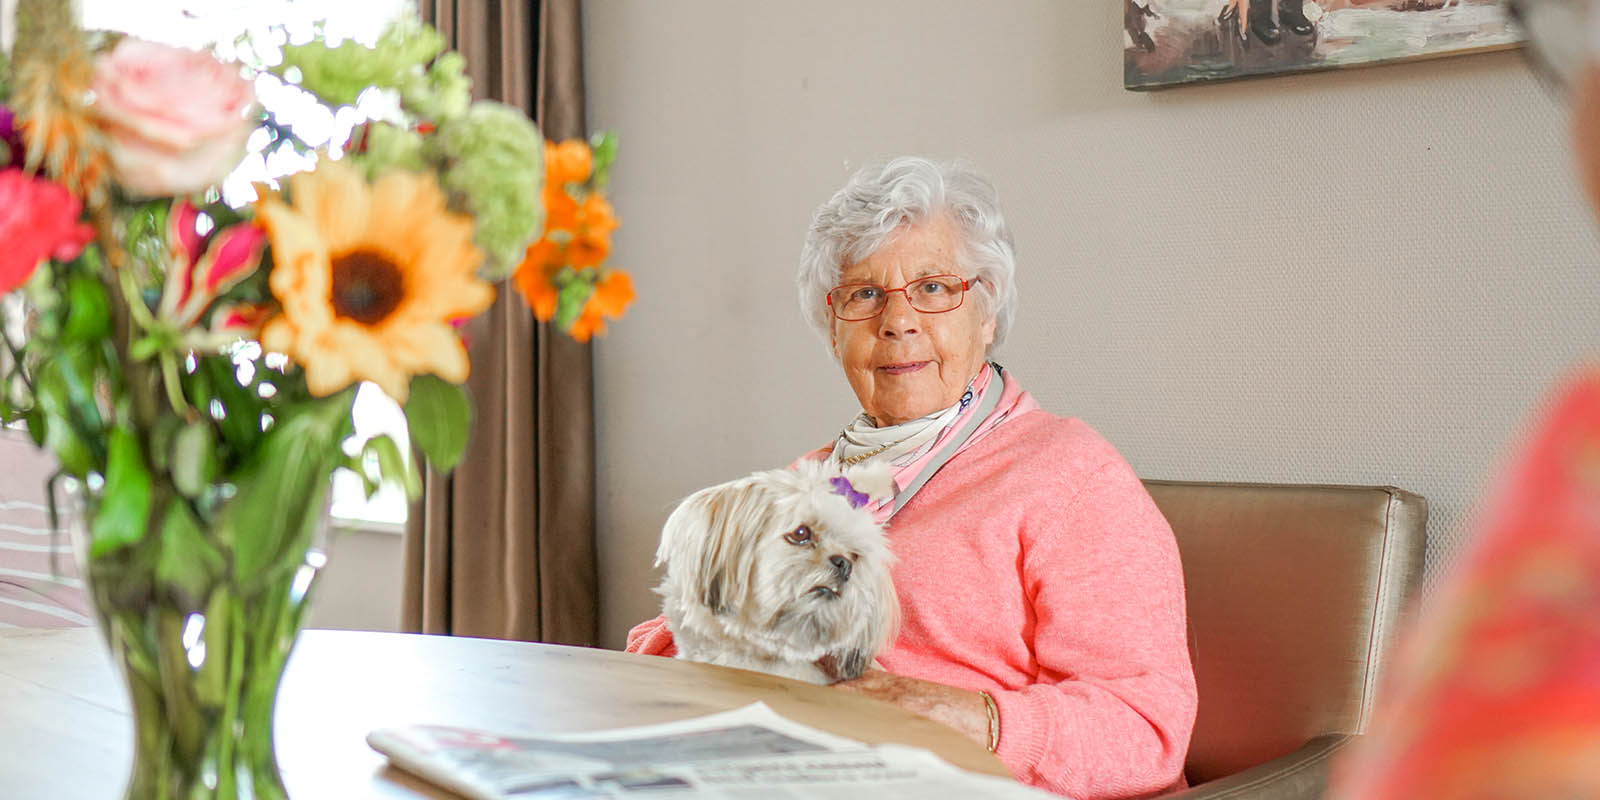 Een bewoonster van een kleisnchalige woonvorm voor mensen met dementie zit aan tafel en knuffelt met een hondje.